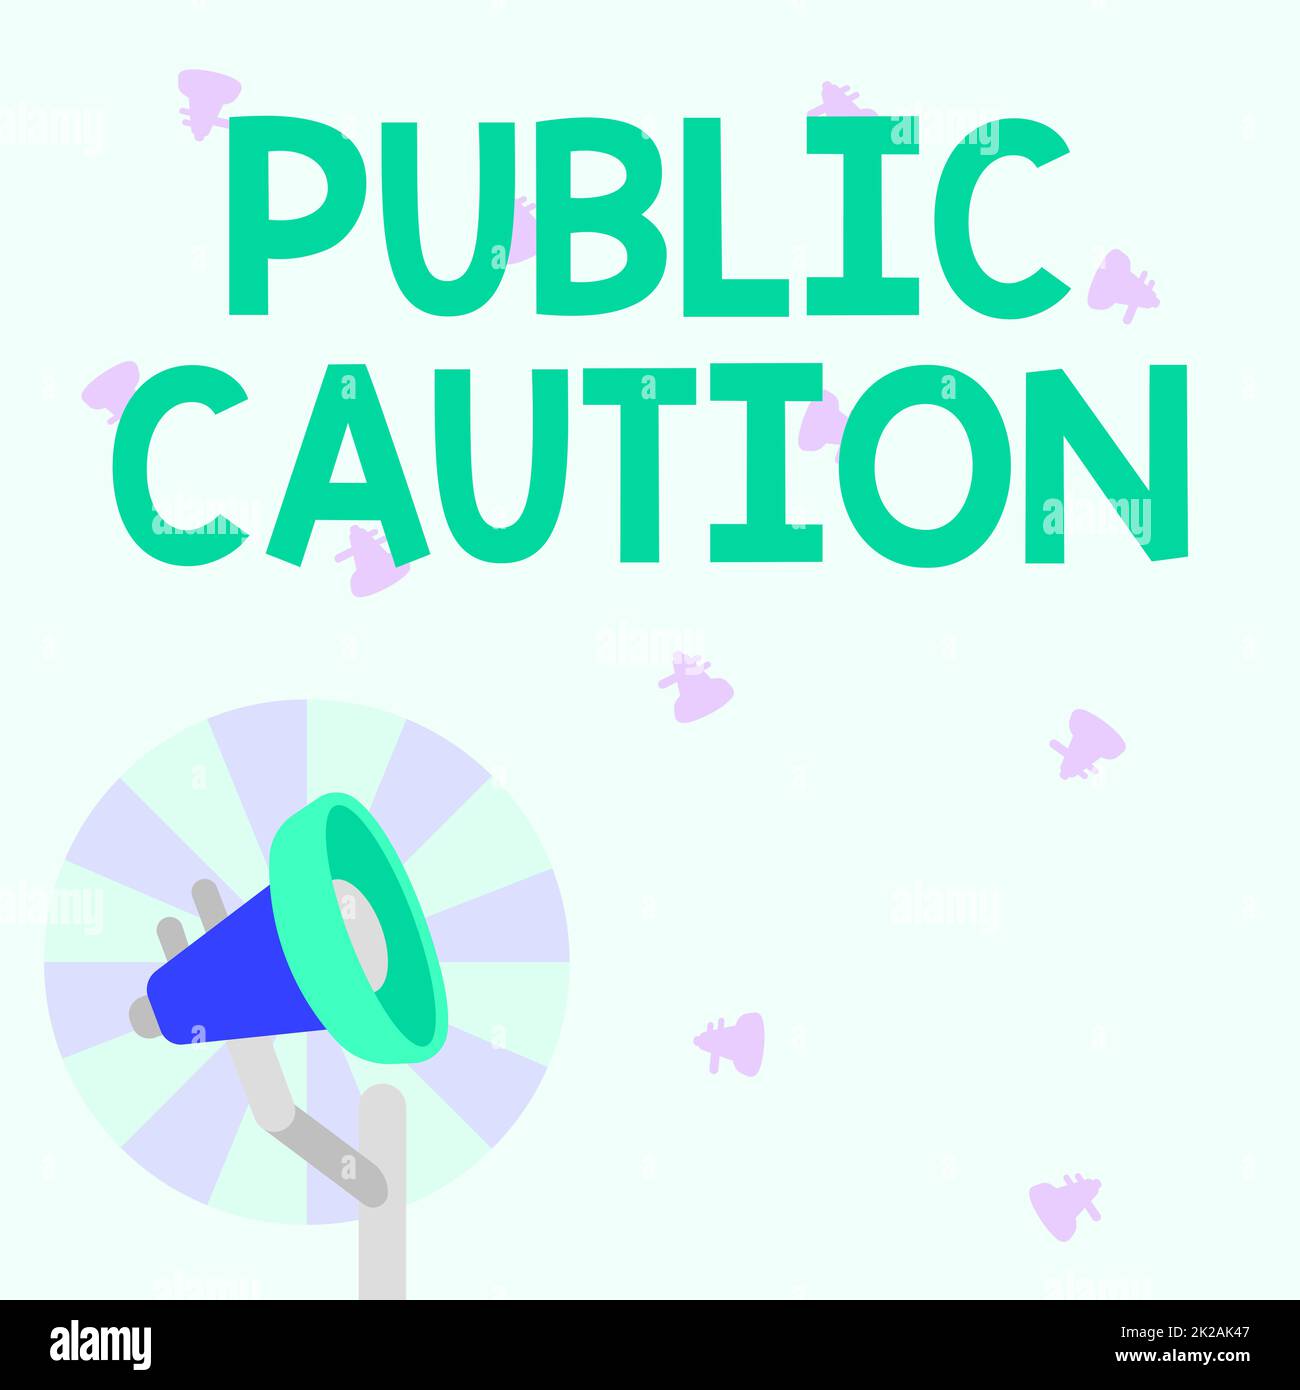 Text zeigt Inspiration Public Caution, Business Concept formale Warnung an die Öffentlichkeit, um ein potenzielles Risiko auszudrücken Illustration von Pole Megaphon Stockfoto